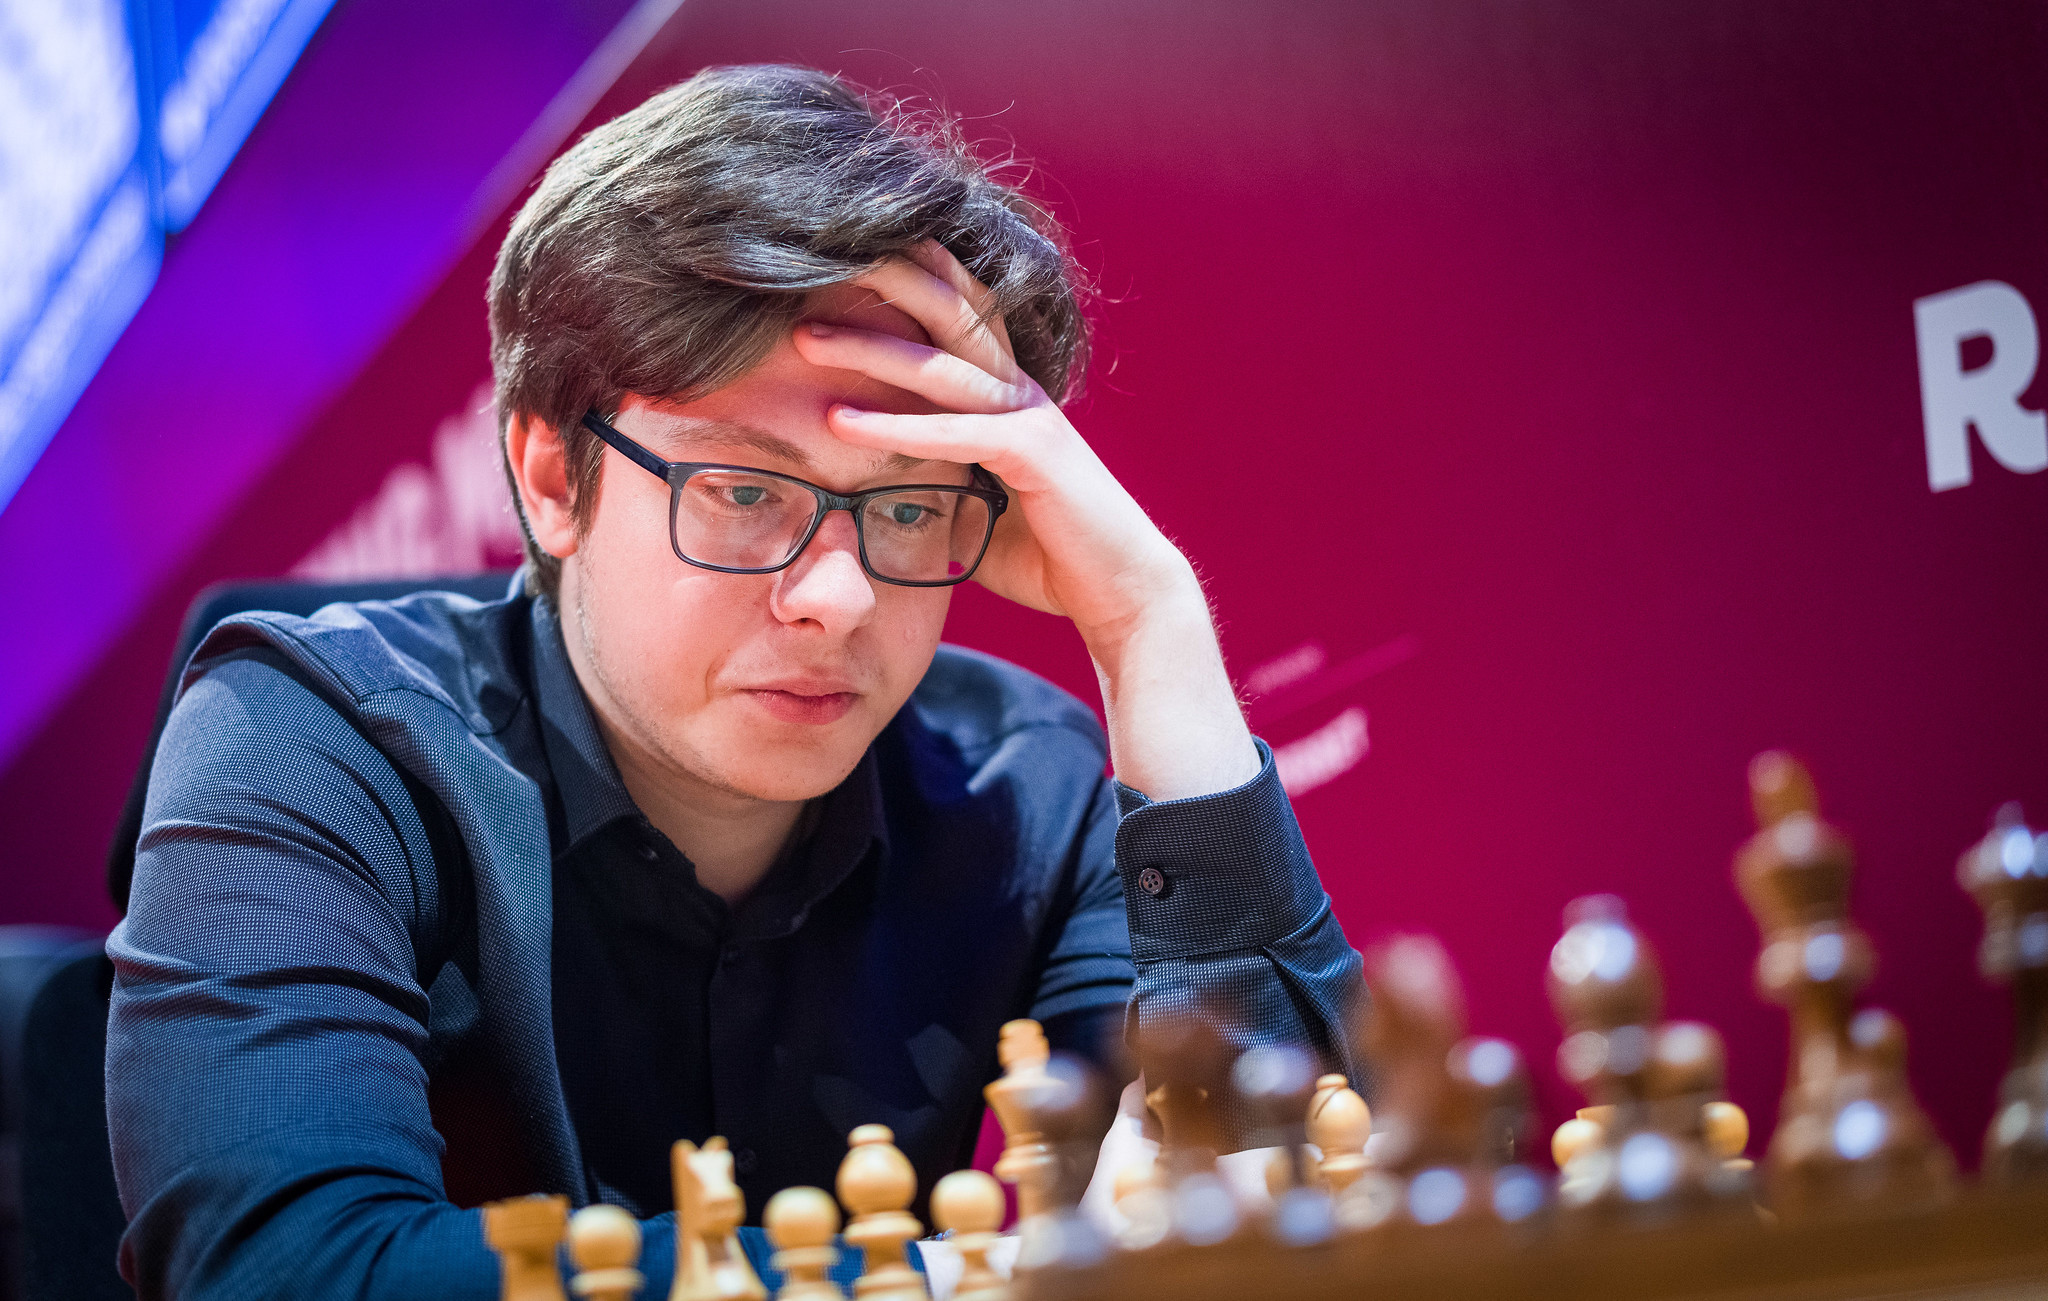 Kirill Shevchenko, şahist ucrainean care joacă sub steagul României, a reuşit să câştige trei meciuri în prima zi a turneului Grand Chess Tour